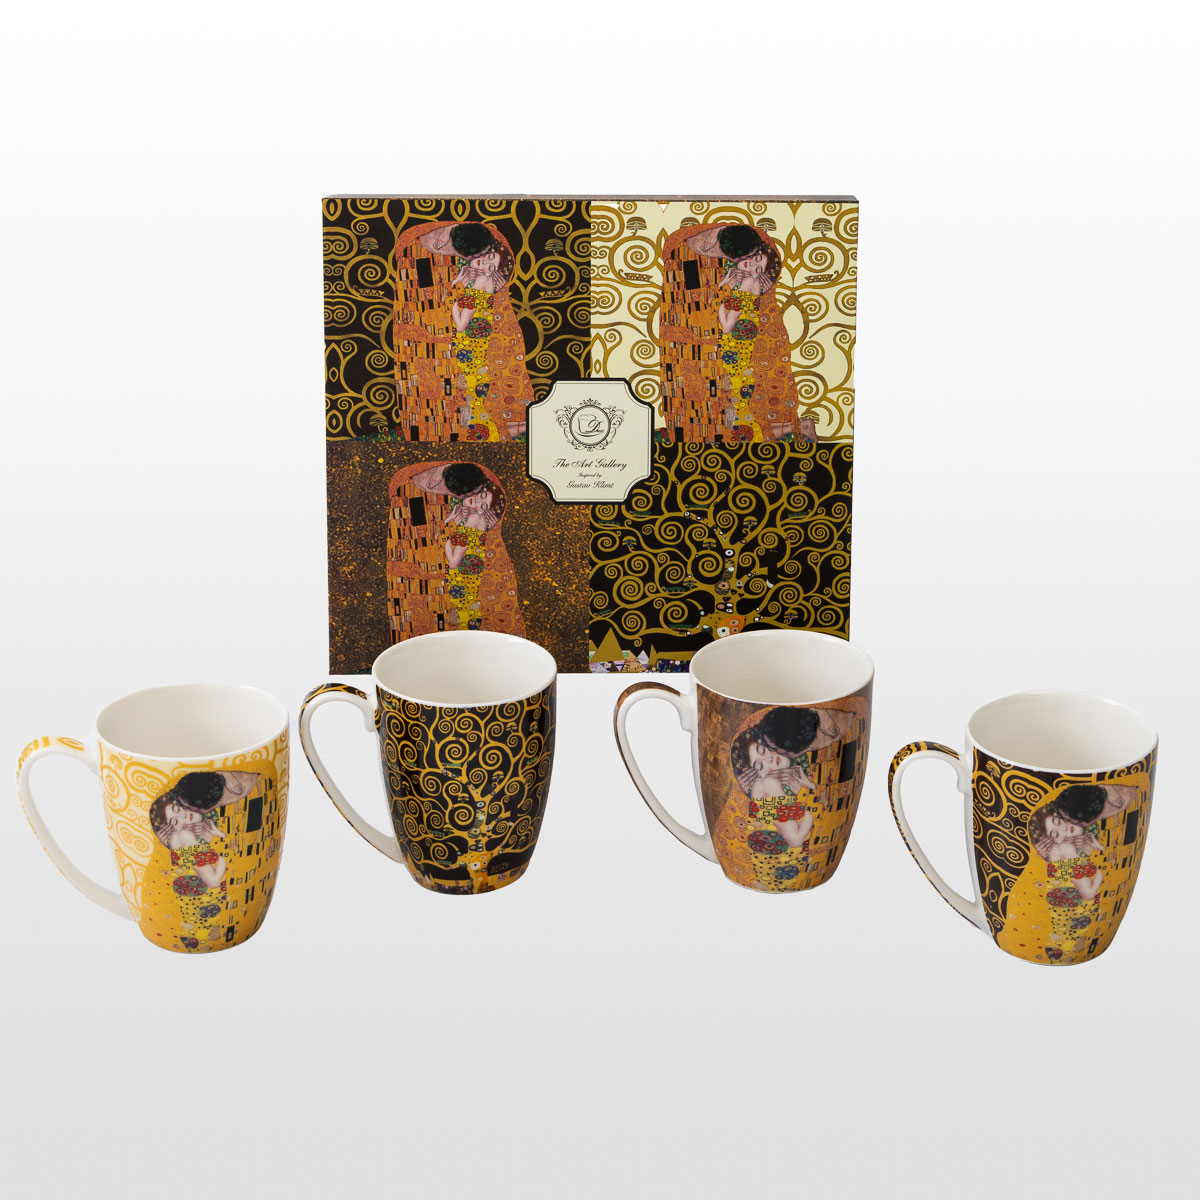 4 Gustav Klimt mugs (in a gift box), detail n°1